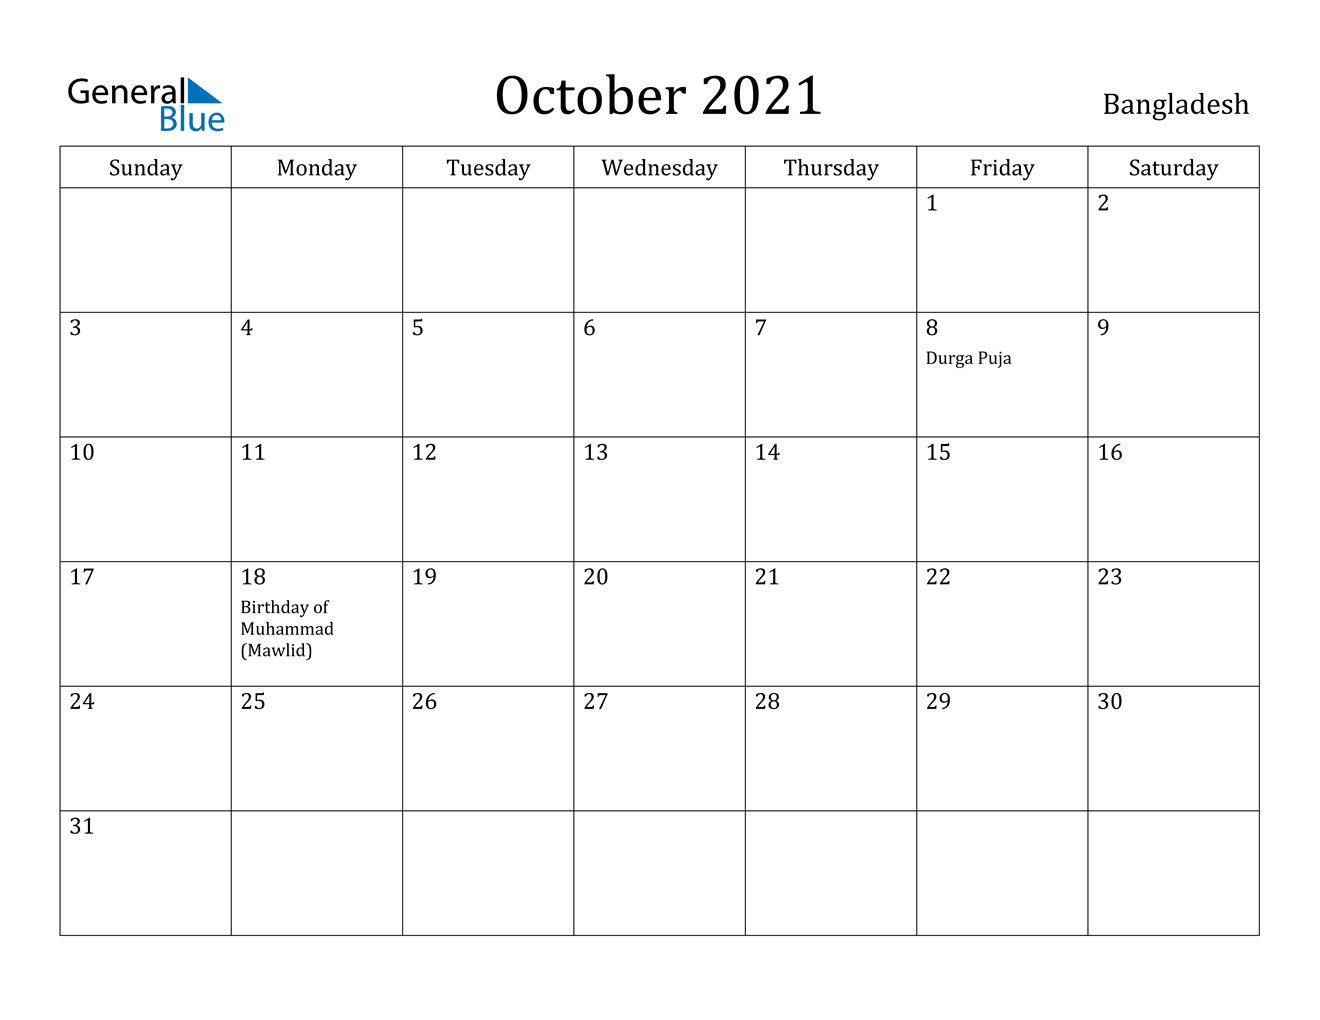 Bangladesh October 2021 Calendar With Holidays